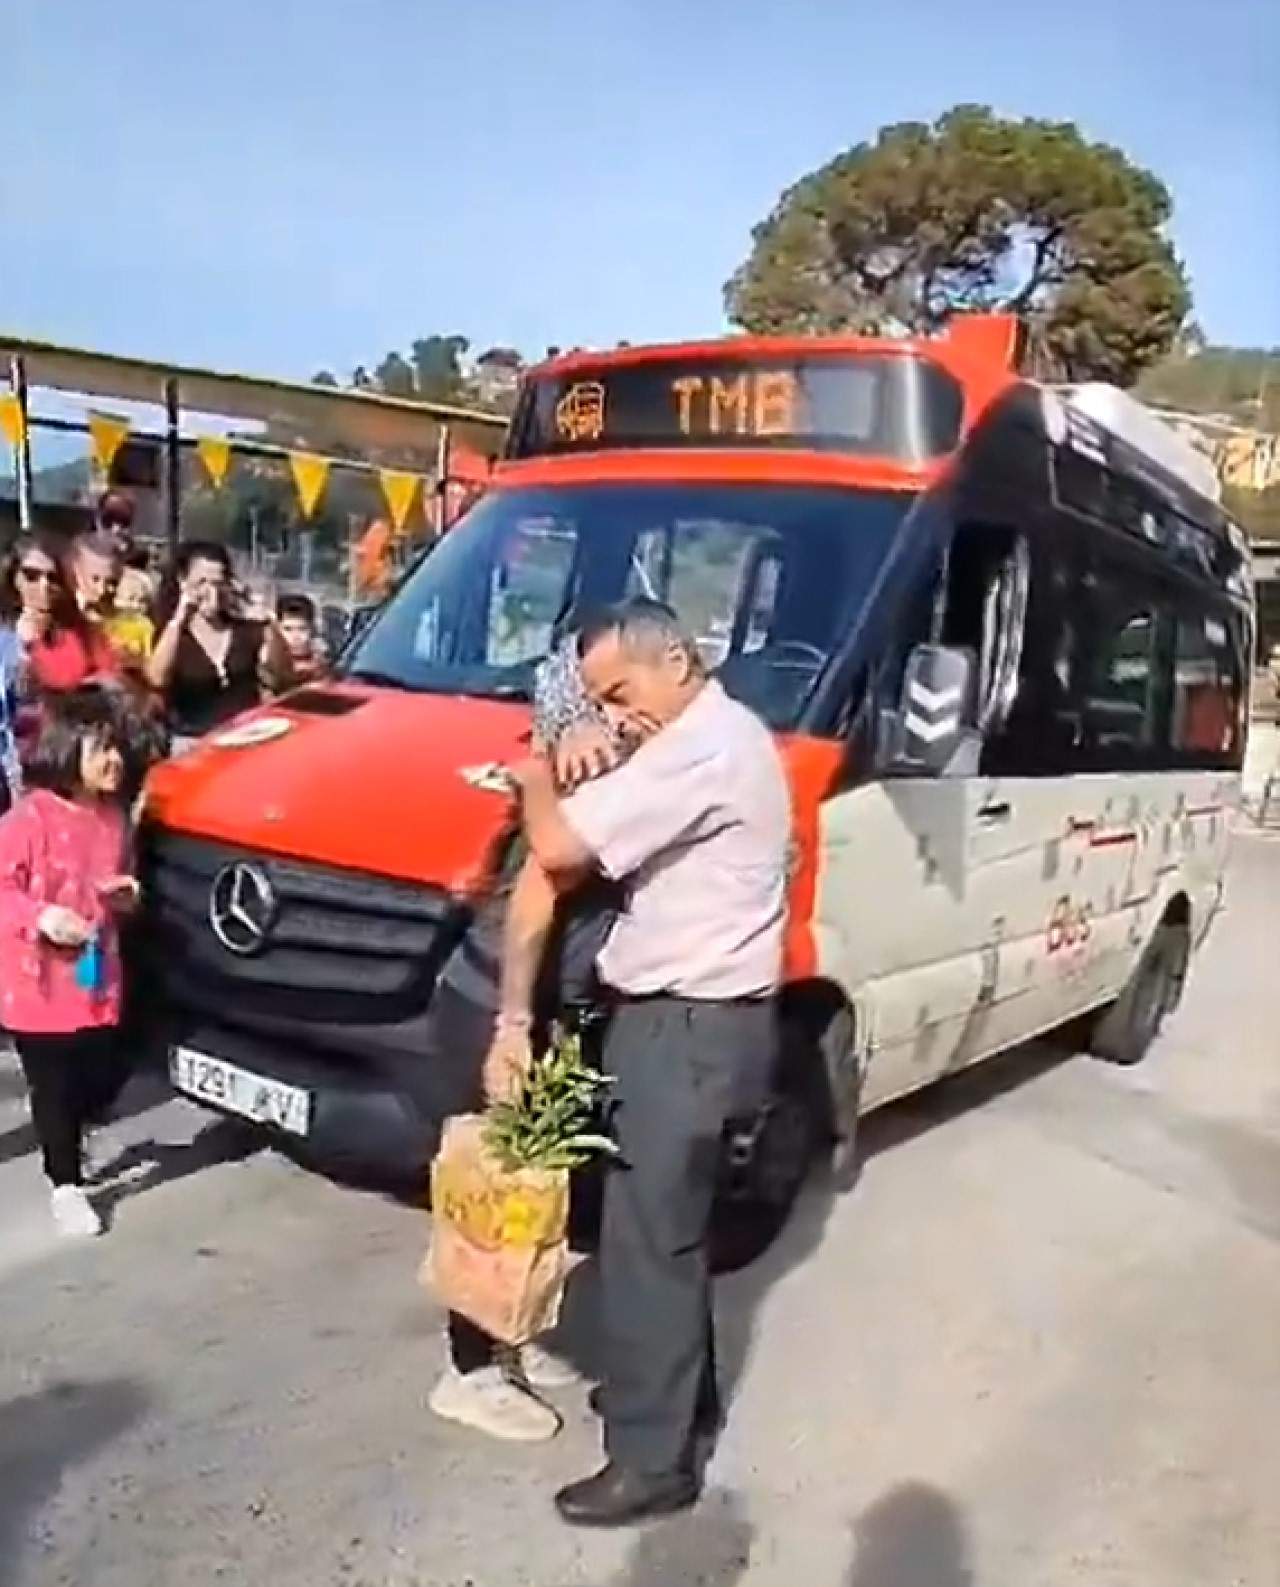 Emotiu comiat a un conductor d'un bus de barri en el dia de la seva jubilació | VÍDEO